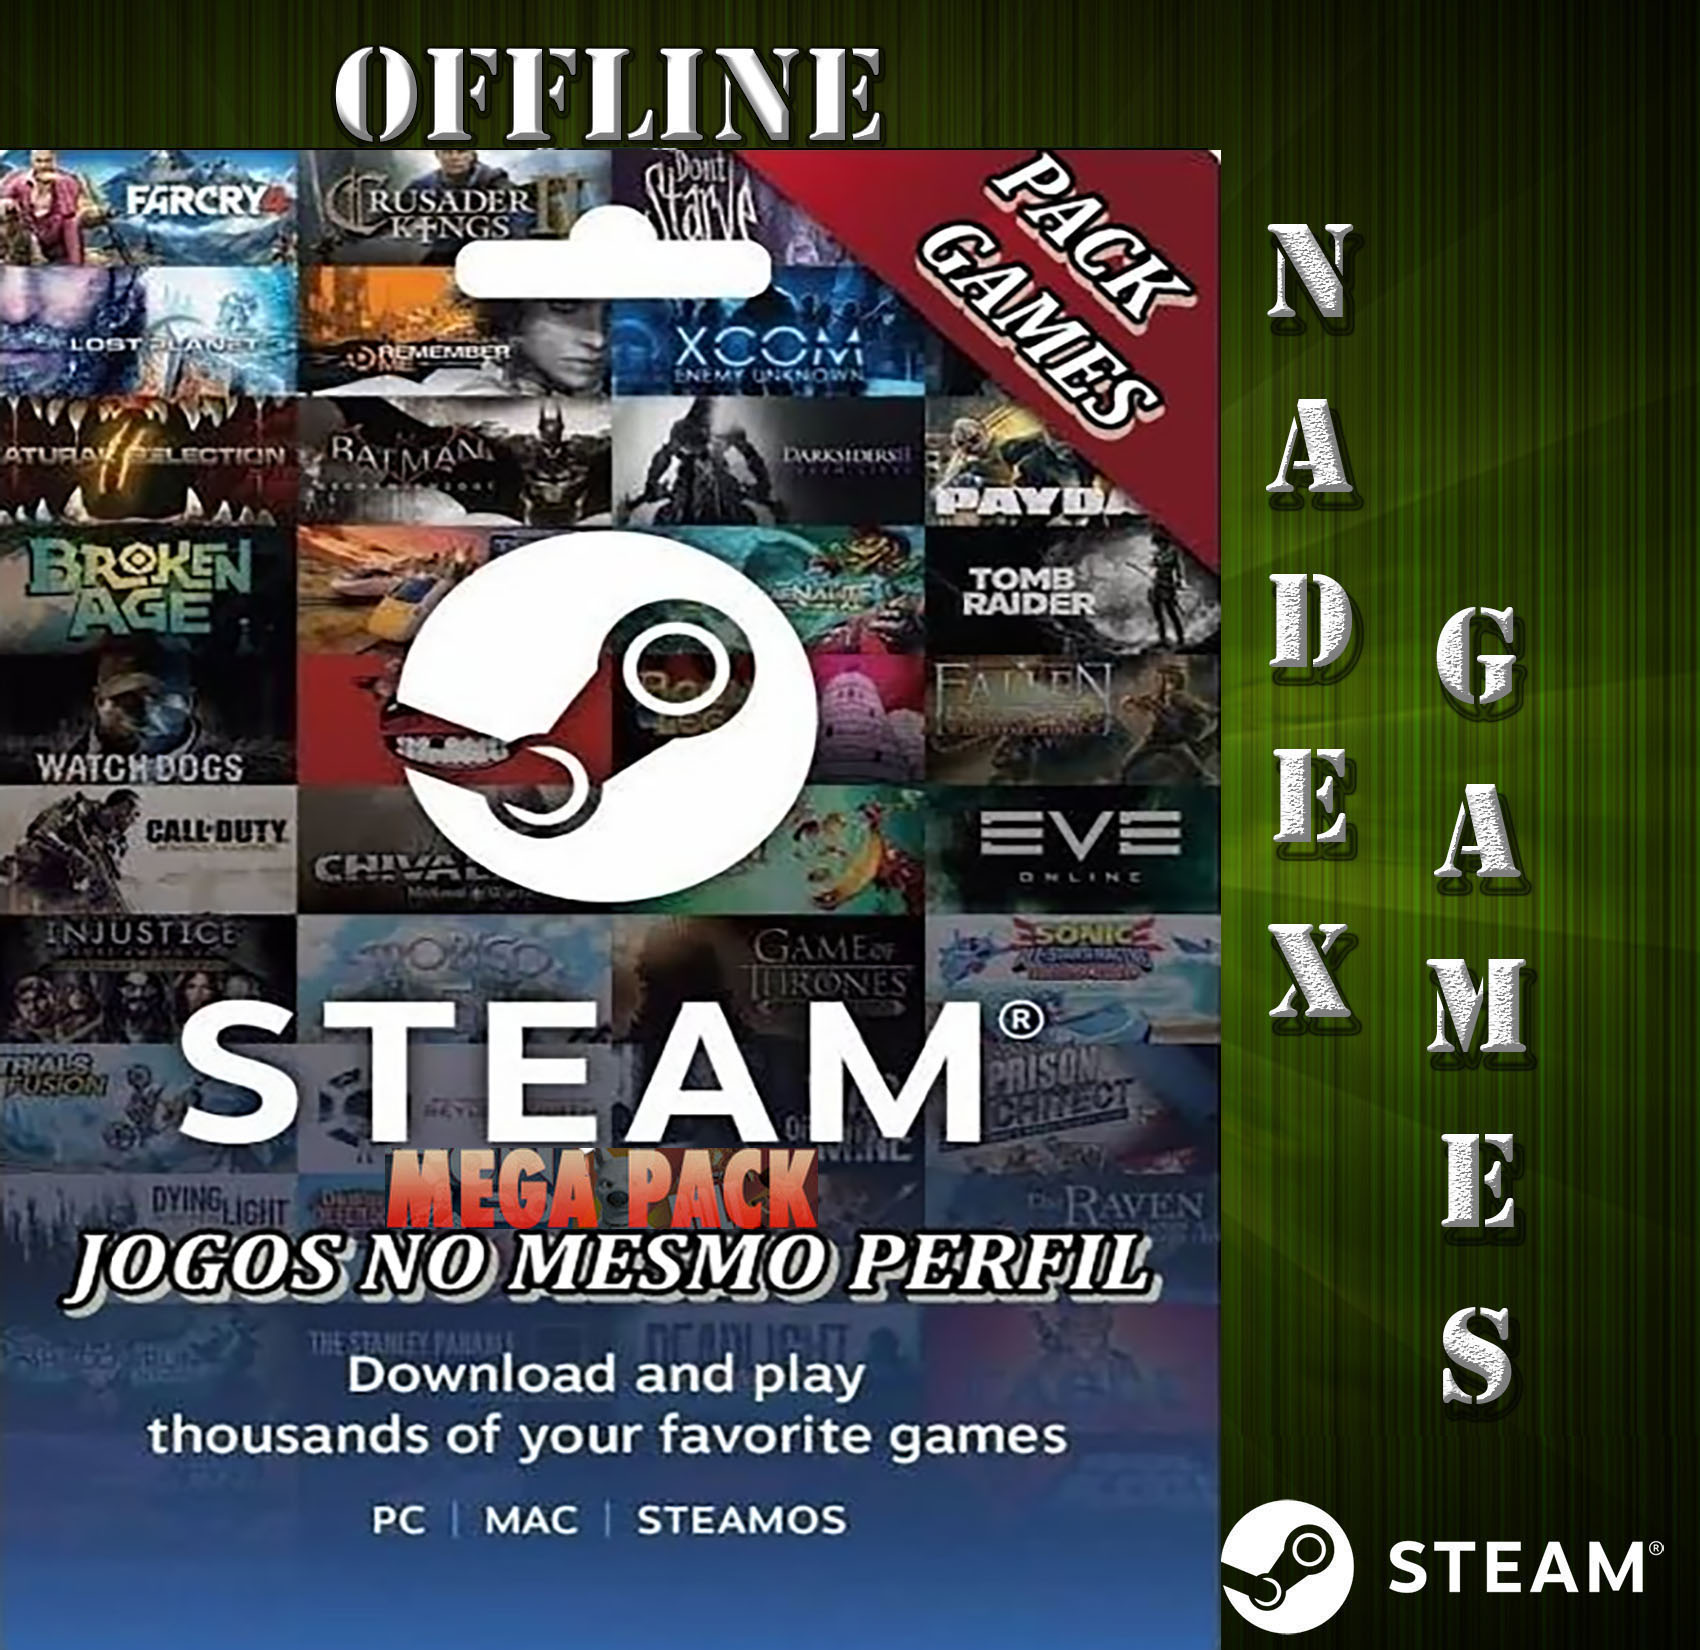 Evil West Pc Steam Offline - Modo Campanha - Loja DrexGames - A sua Loja De  Games